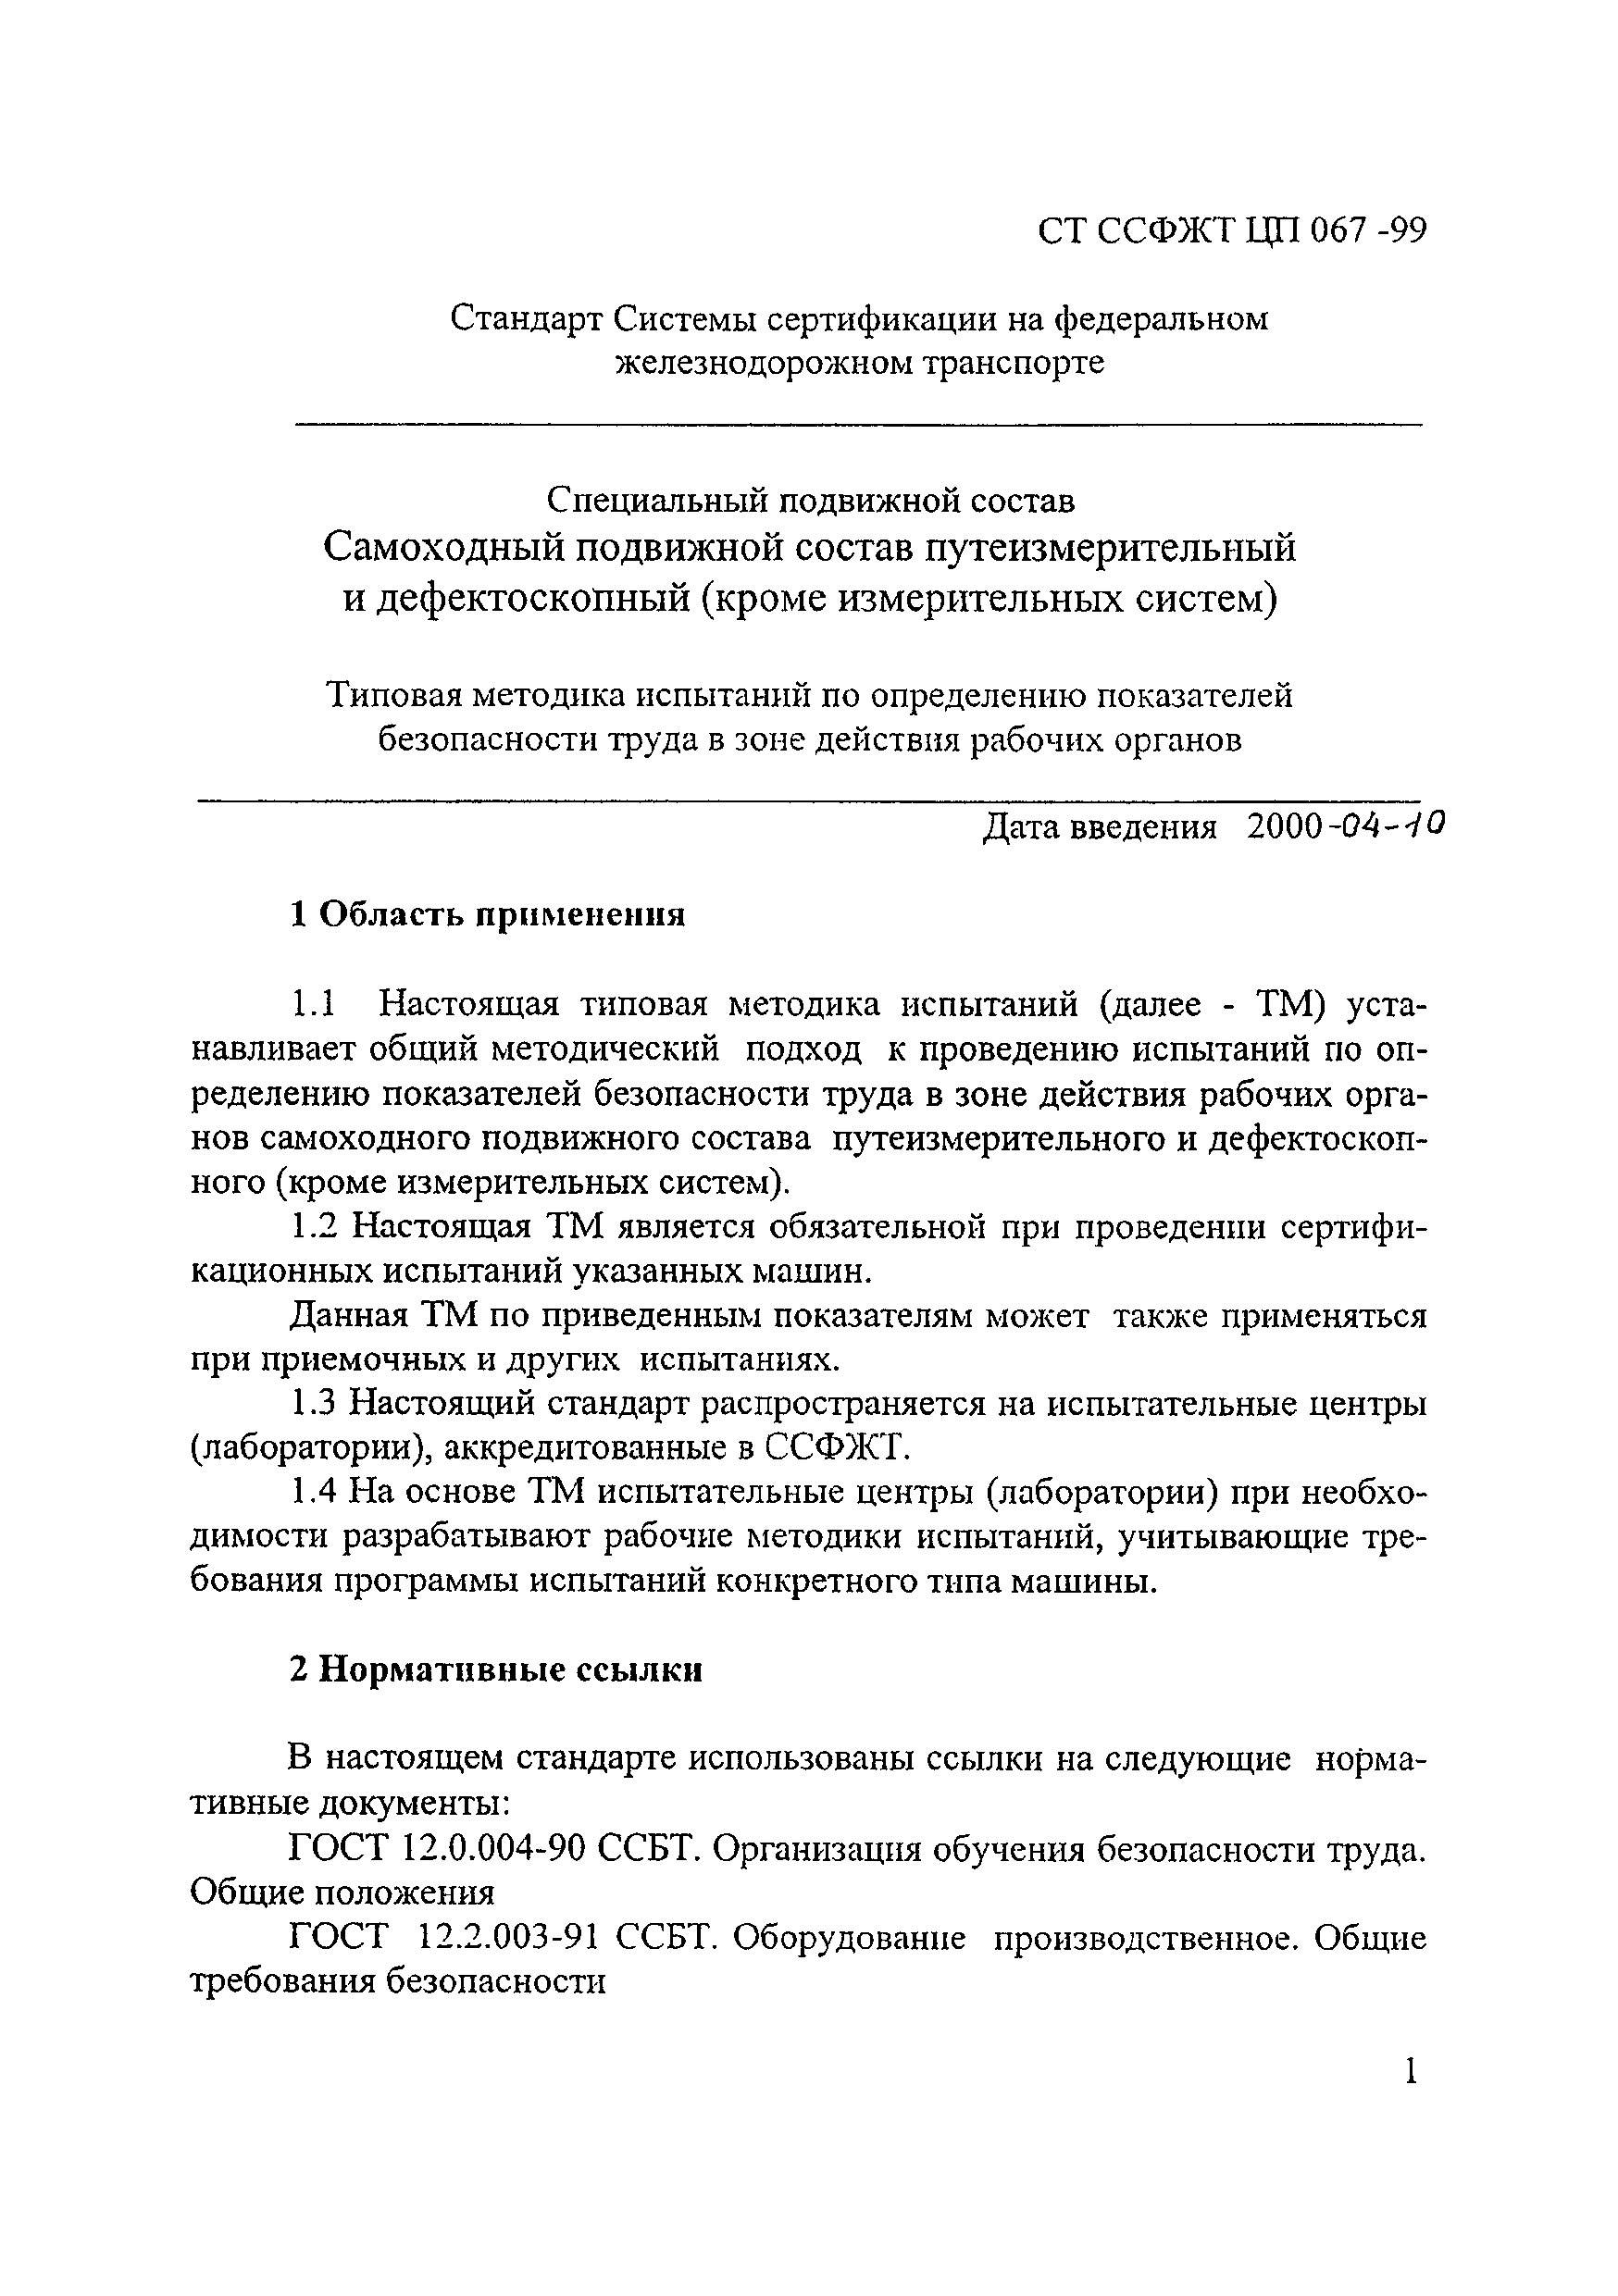 СТ ССФЖТ ЦП 067-99